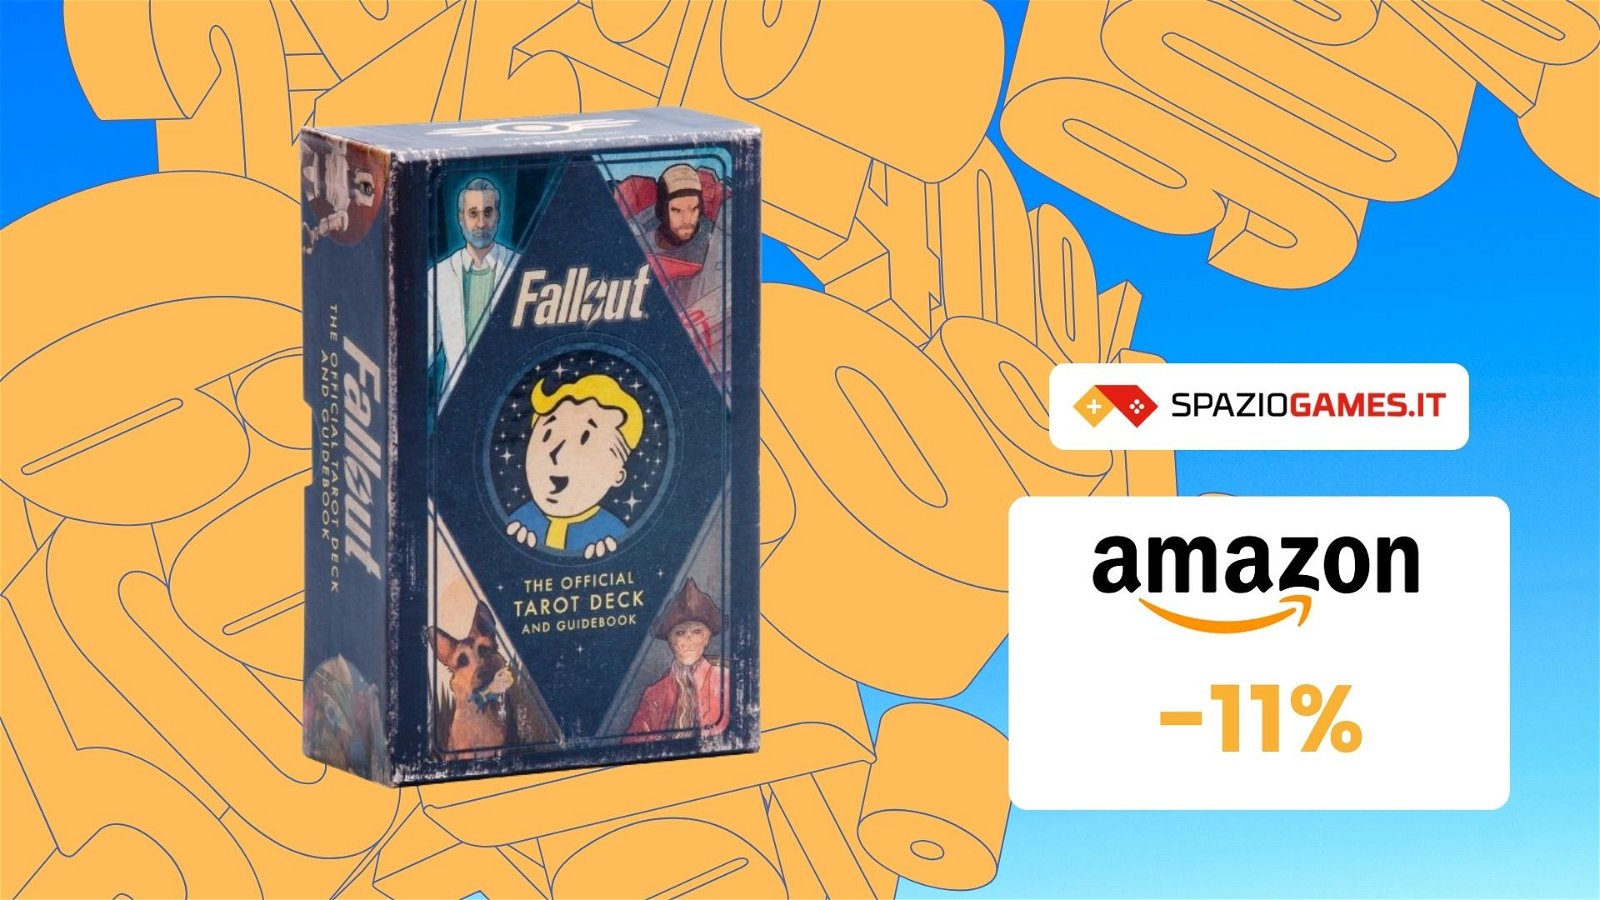 Tarocchi ufficiali Fallout, CHE PREZZO! Su Amazon risparmi l'11%!